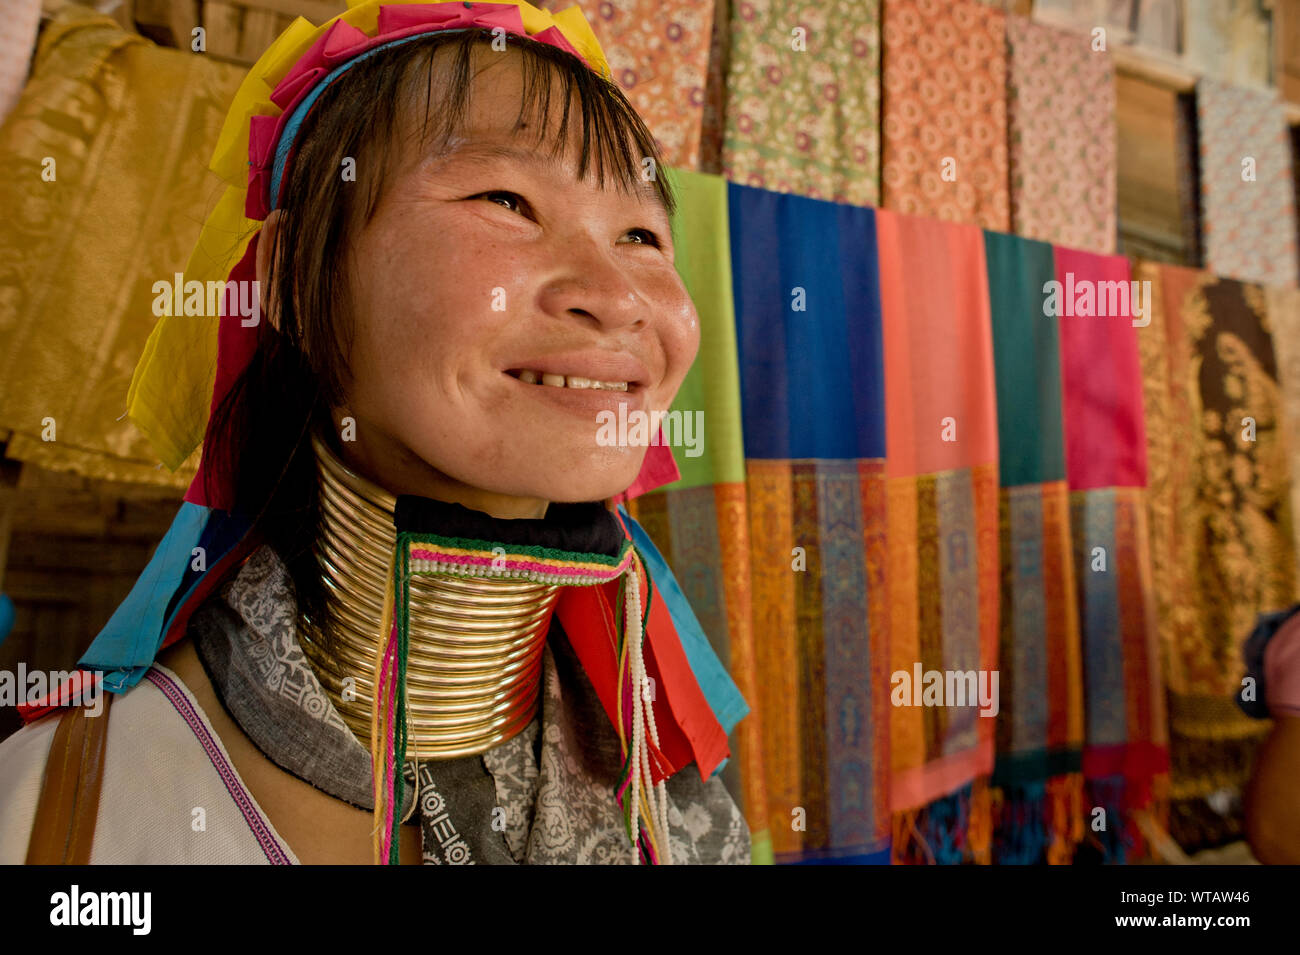 Karen long cou woman smiling in la boutique de souvenirs Banque D'Images